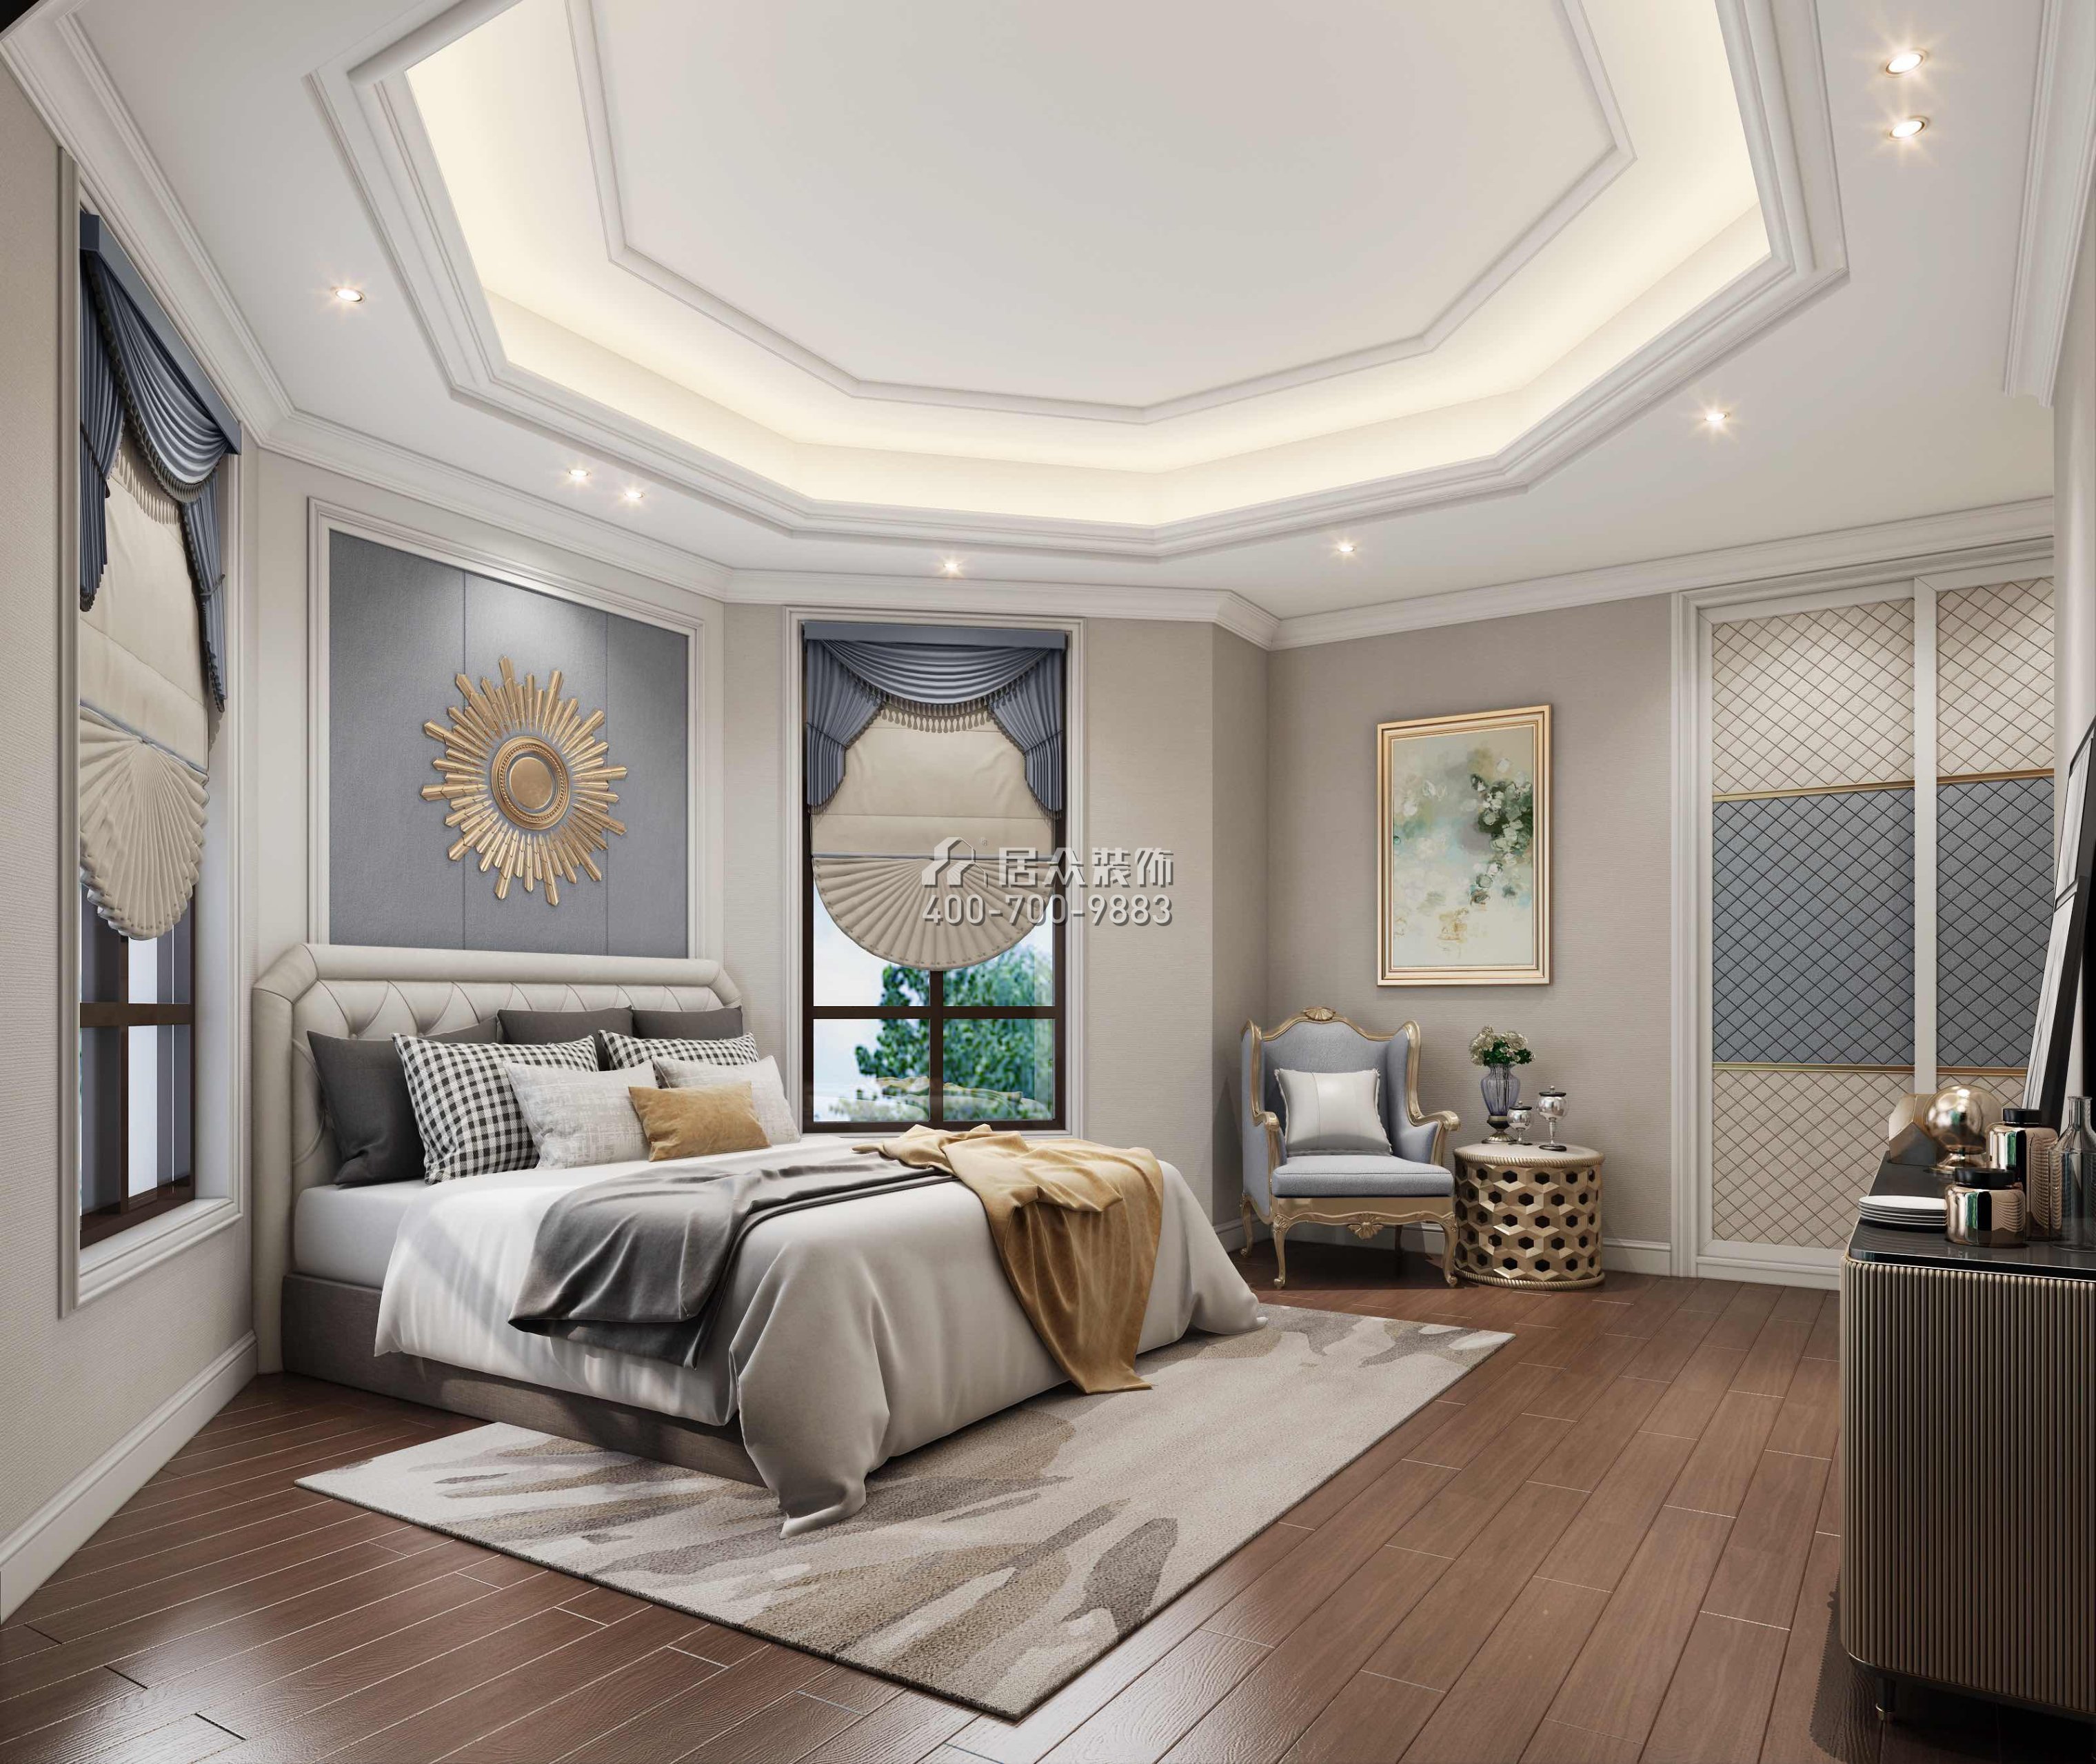 臥龍山一號500平方米歐式風格別墅戶型臥室裝修效果圖